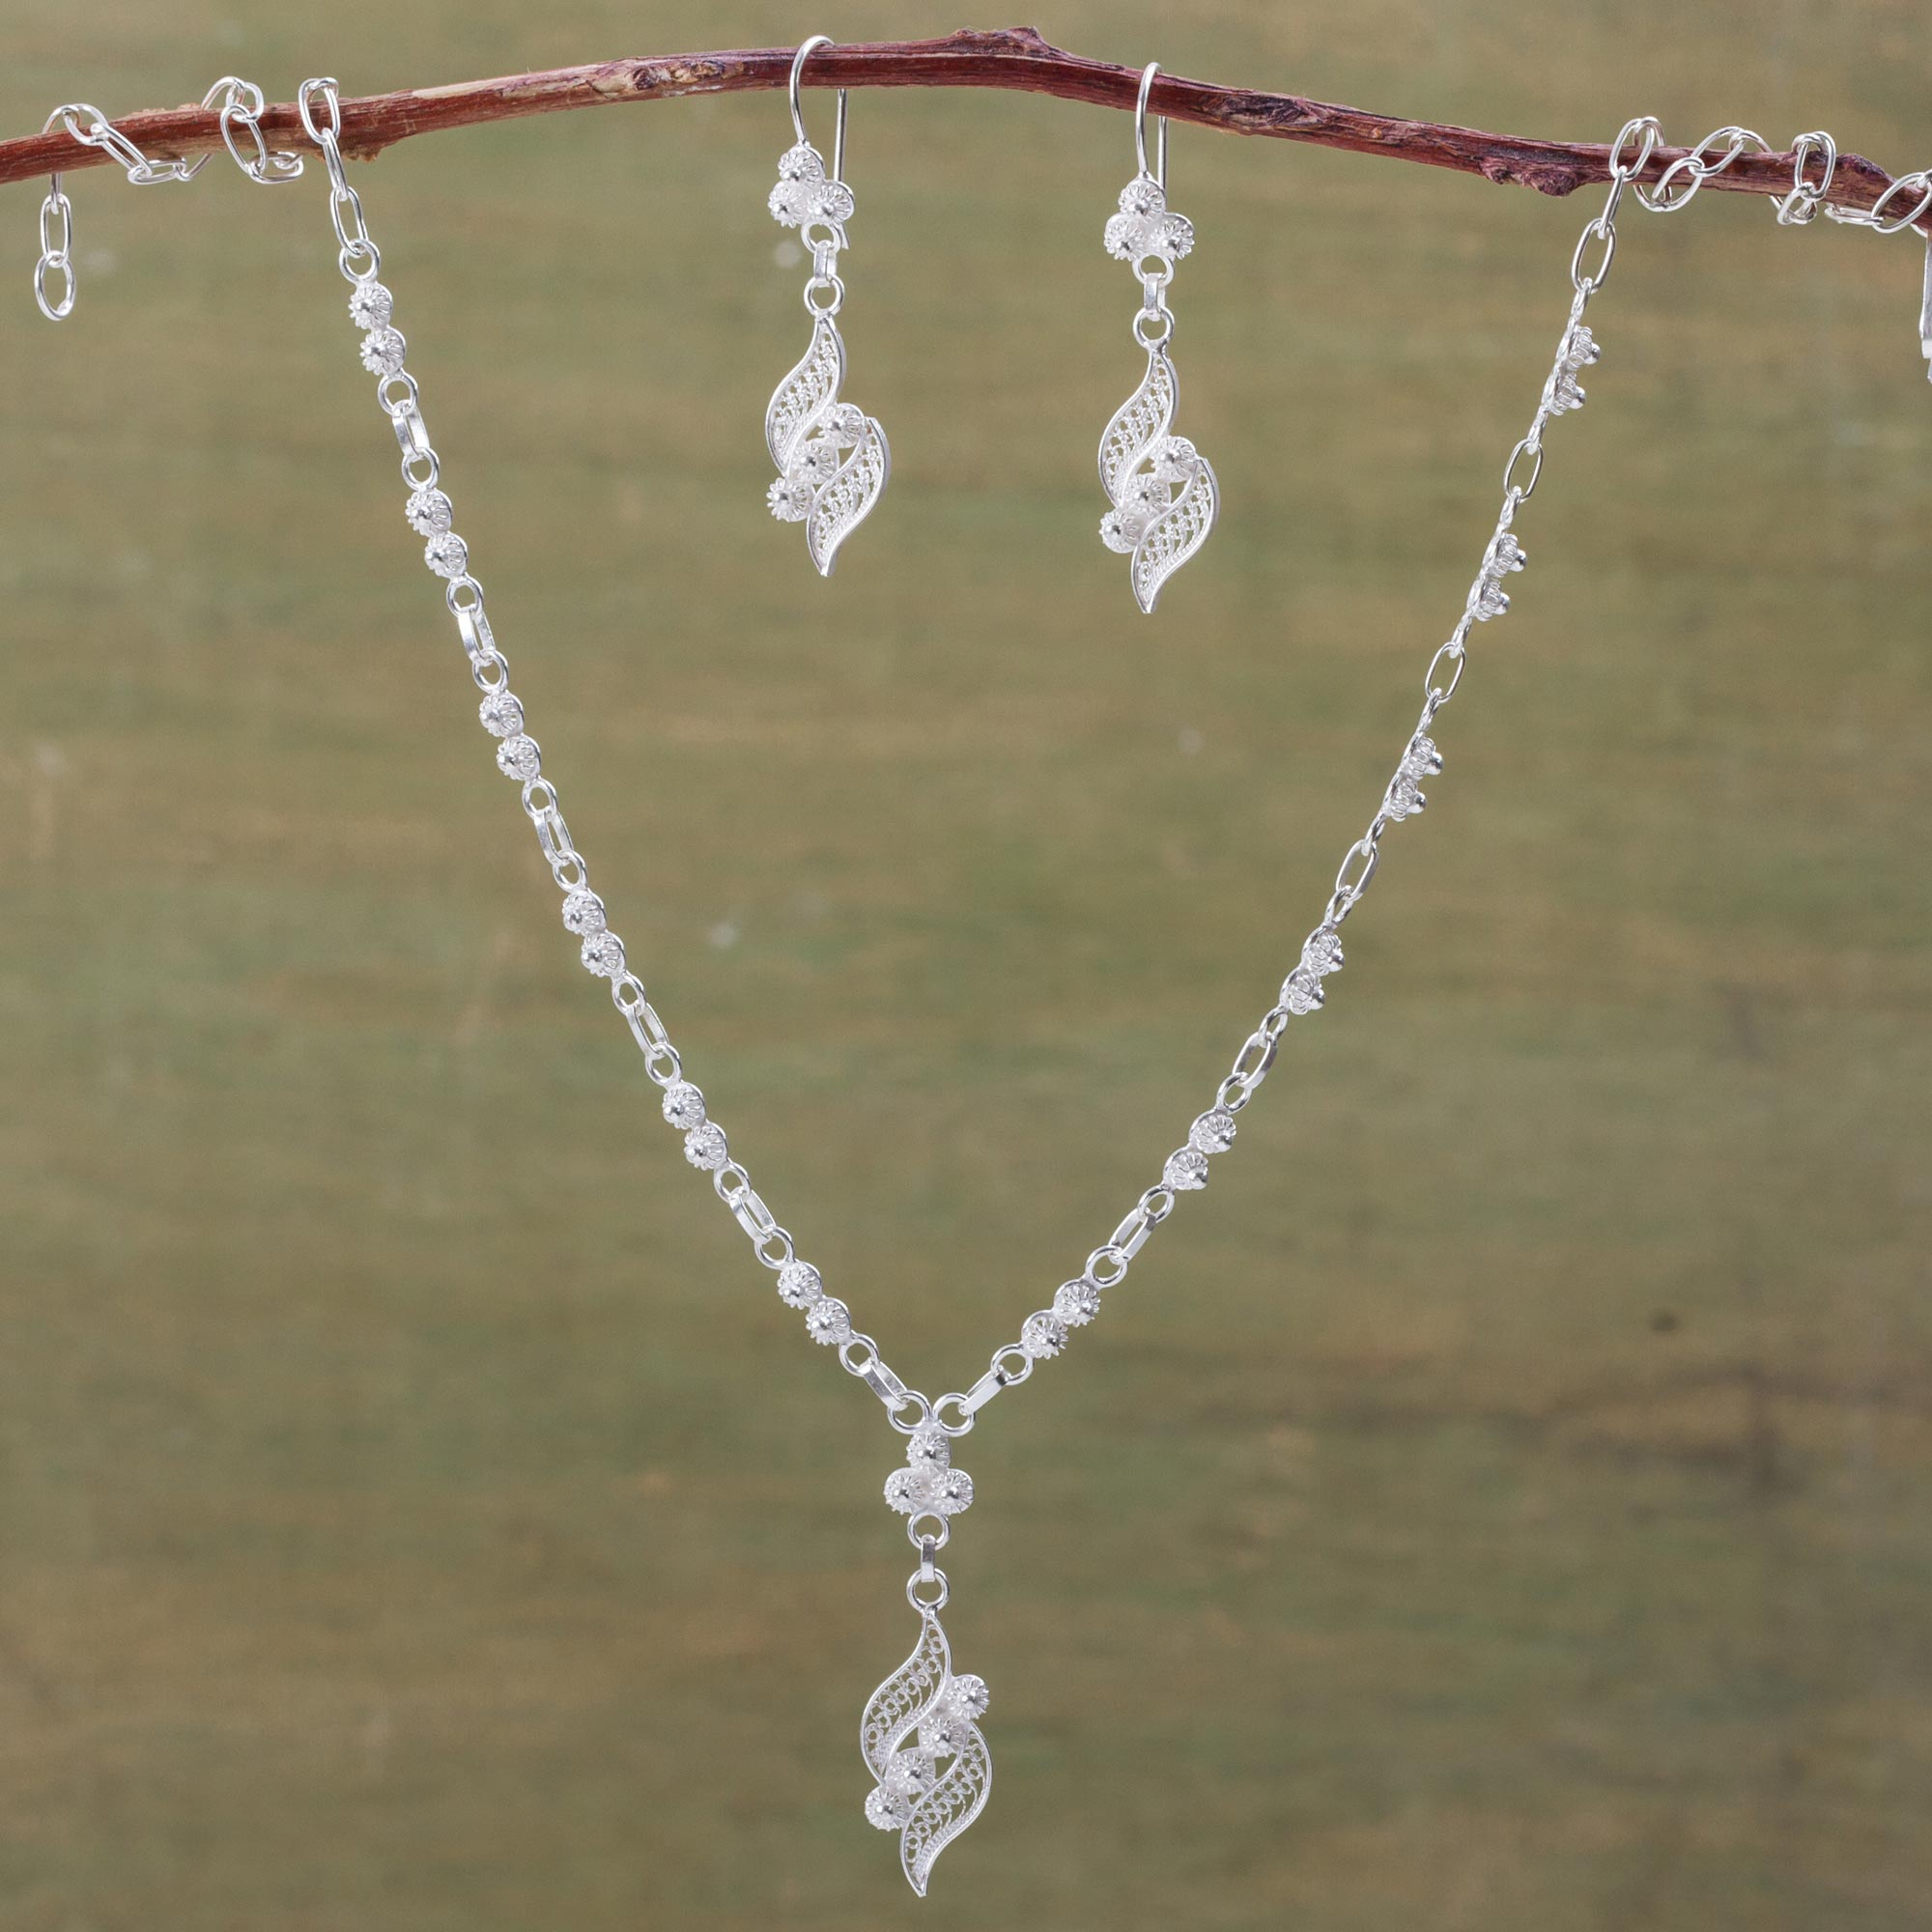 Pendant silver earrings in filigree